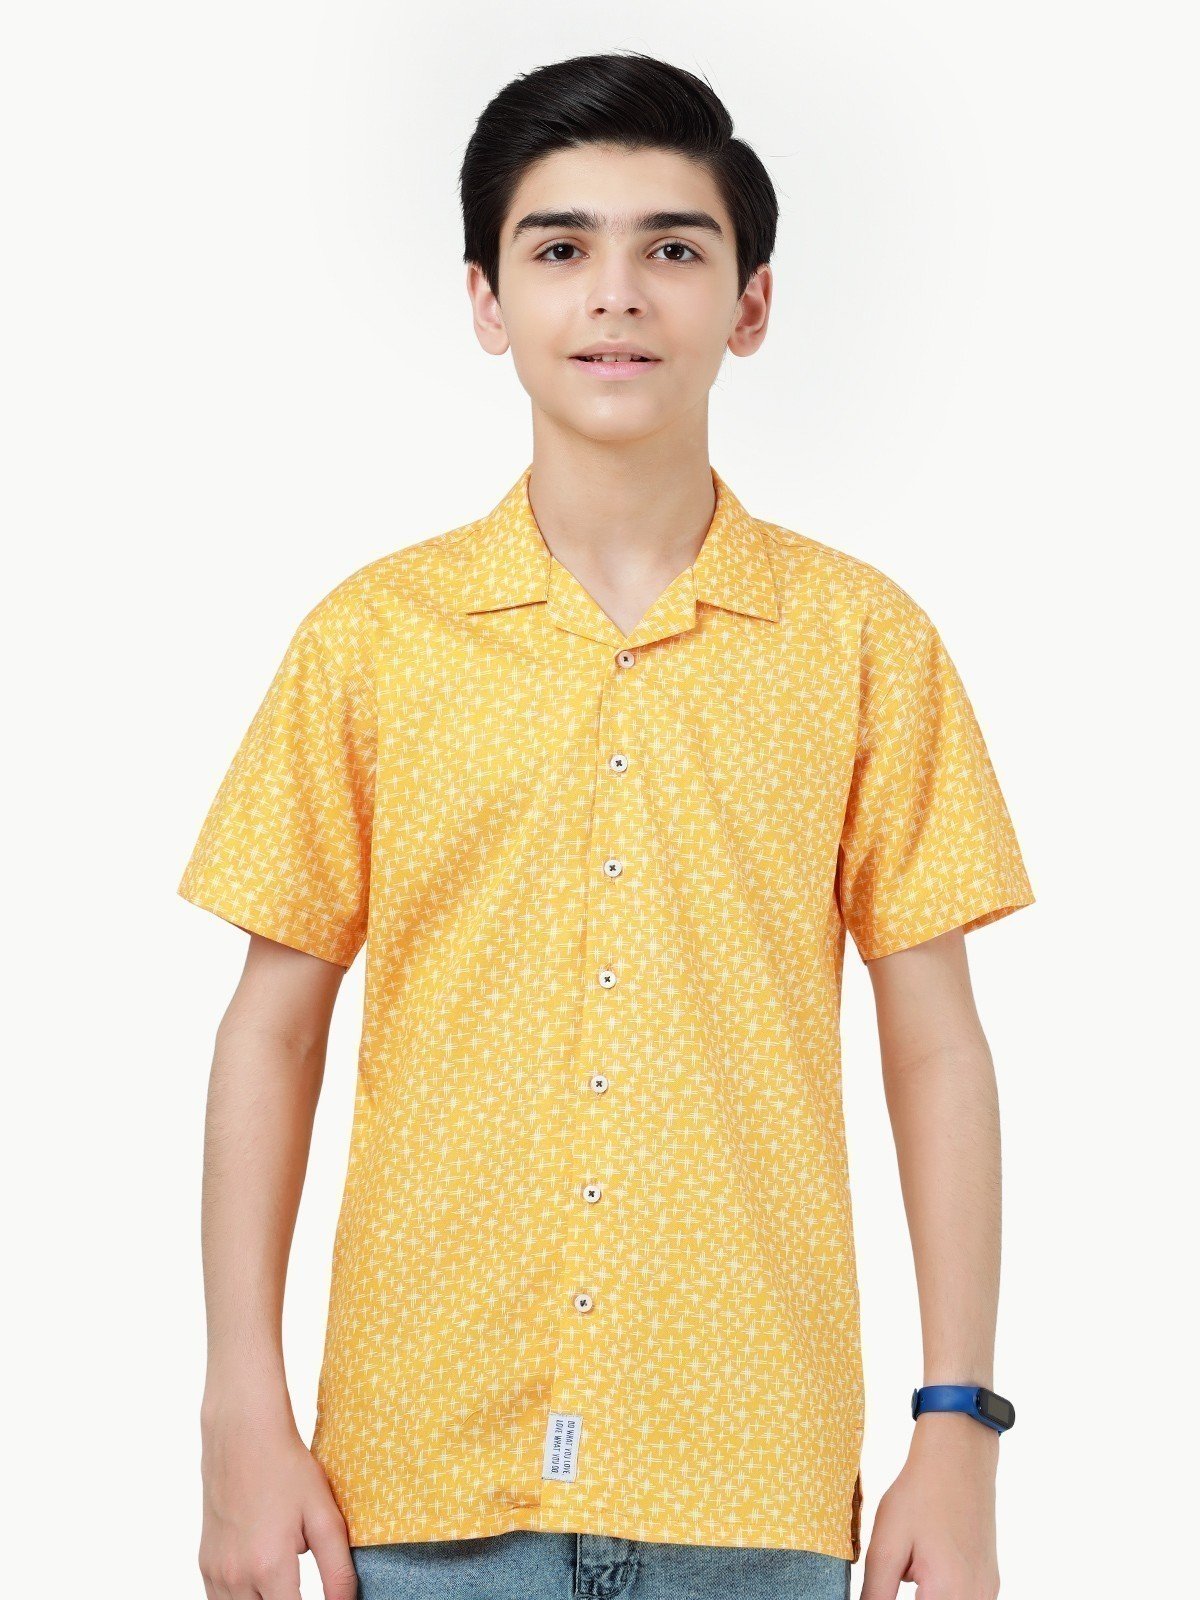 Boy's Yellow Shirt - EBTS22-27419